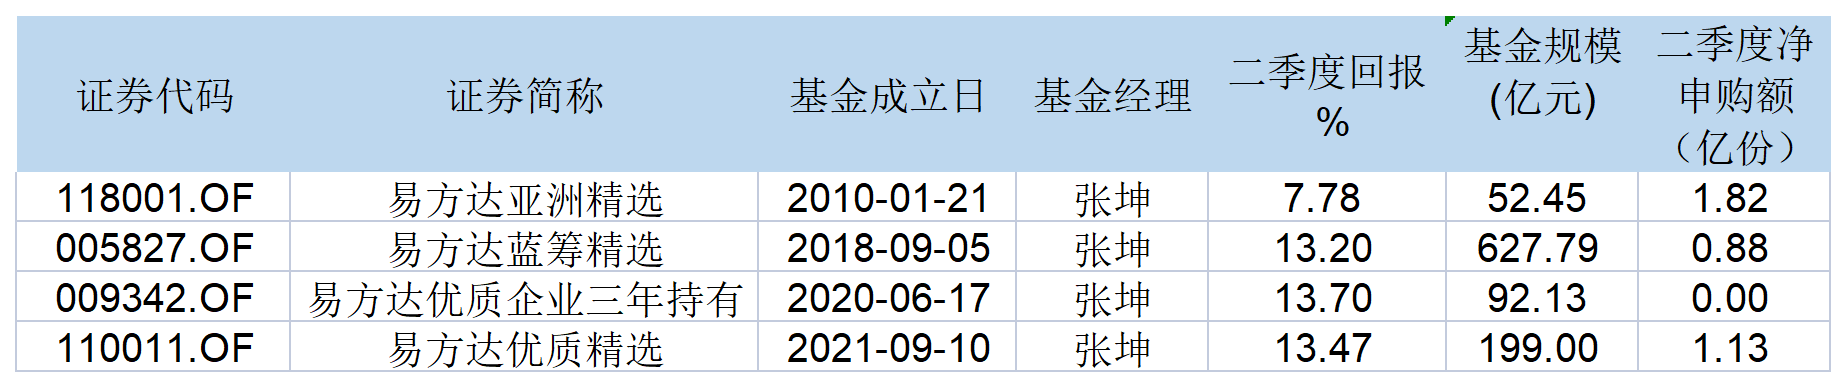 表：张坤在管产品业绩和规模明细 来源：公告 界面新闻研究部